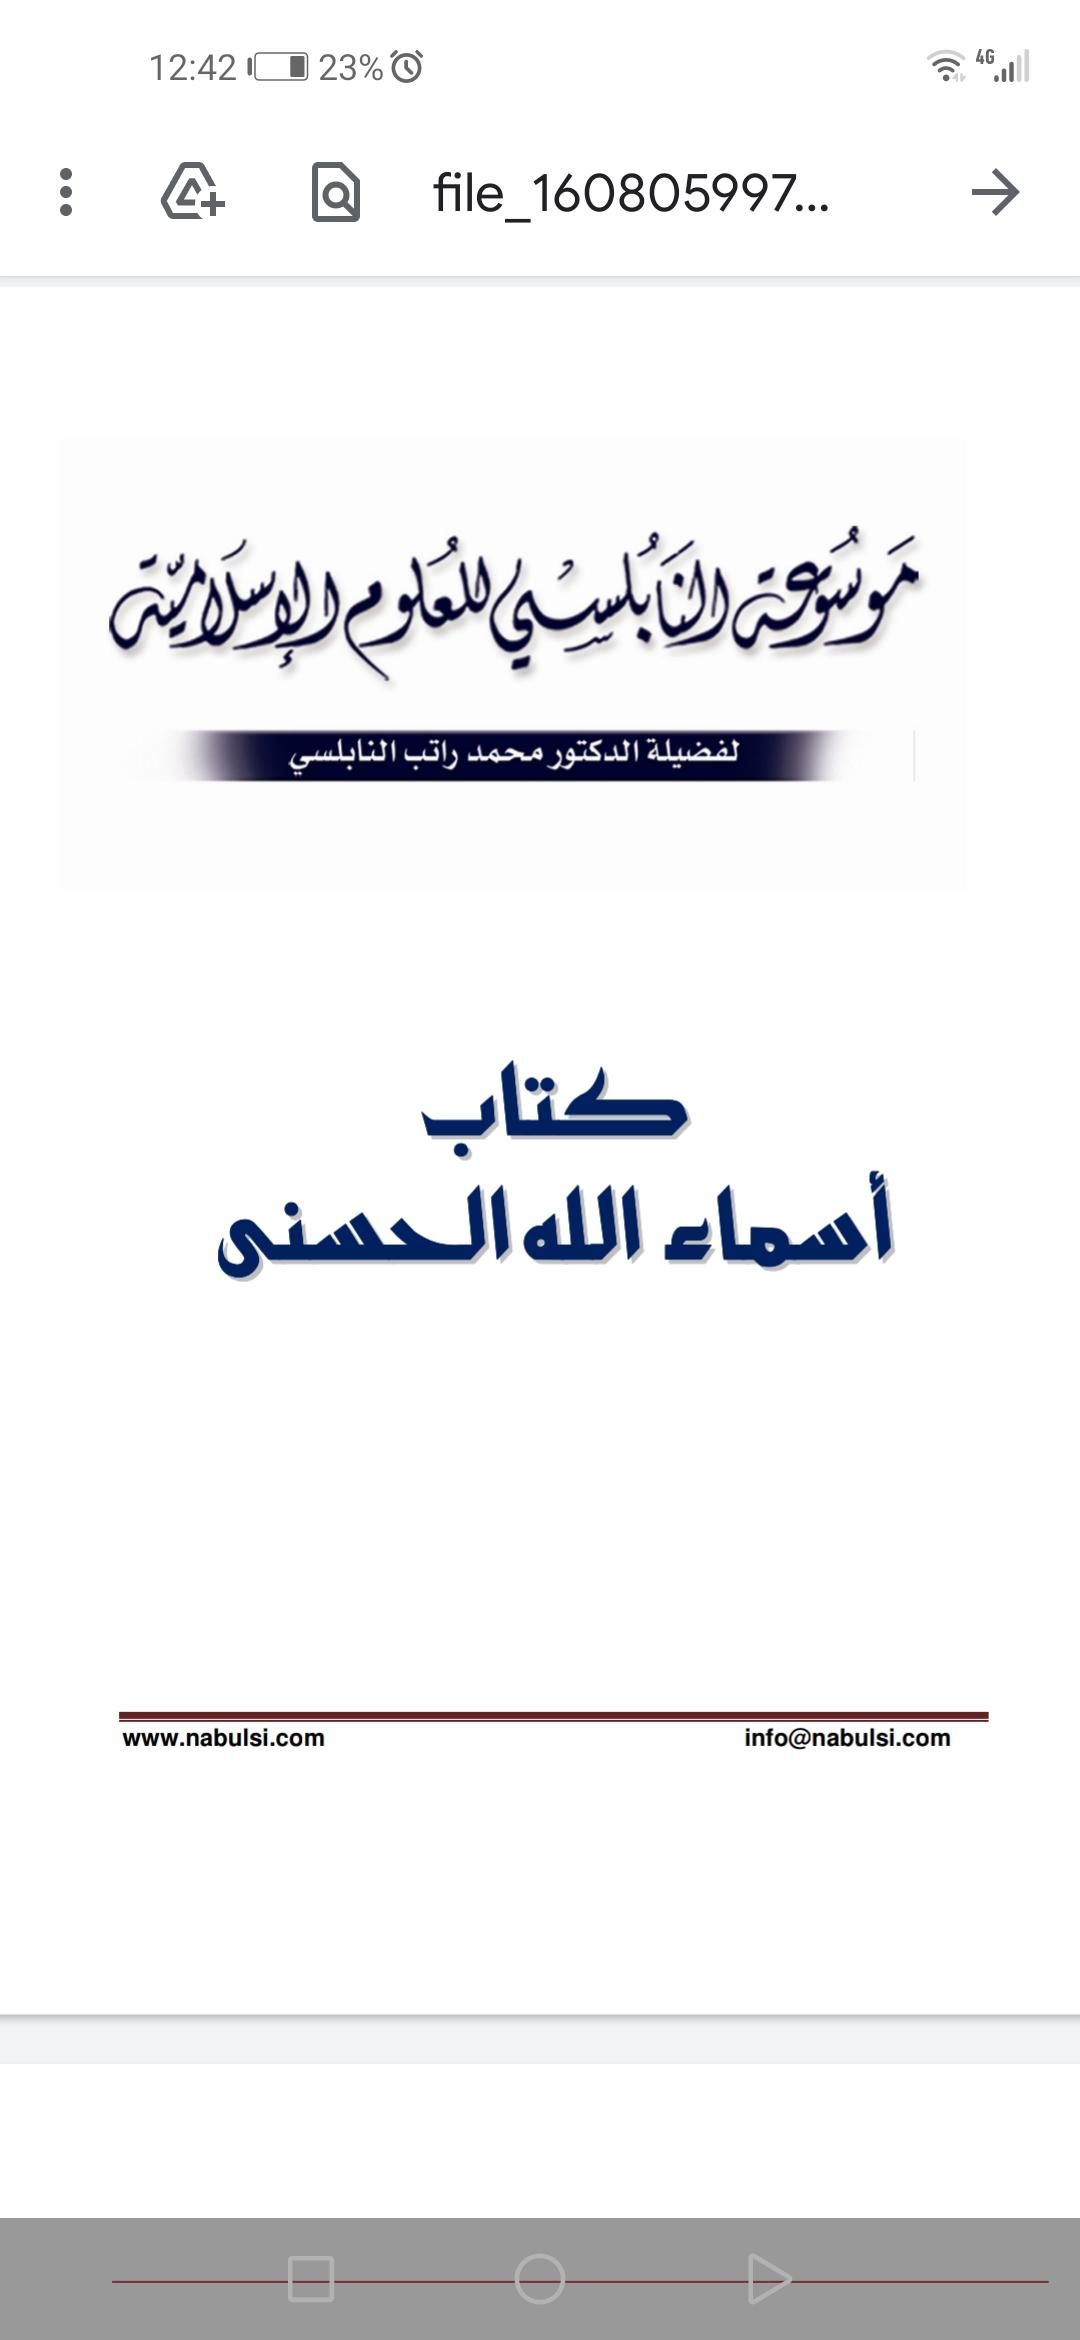 معاني أسماء الله الحسنى محمد راتب النابلسي For Android Apk Download